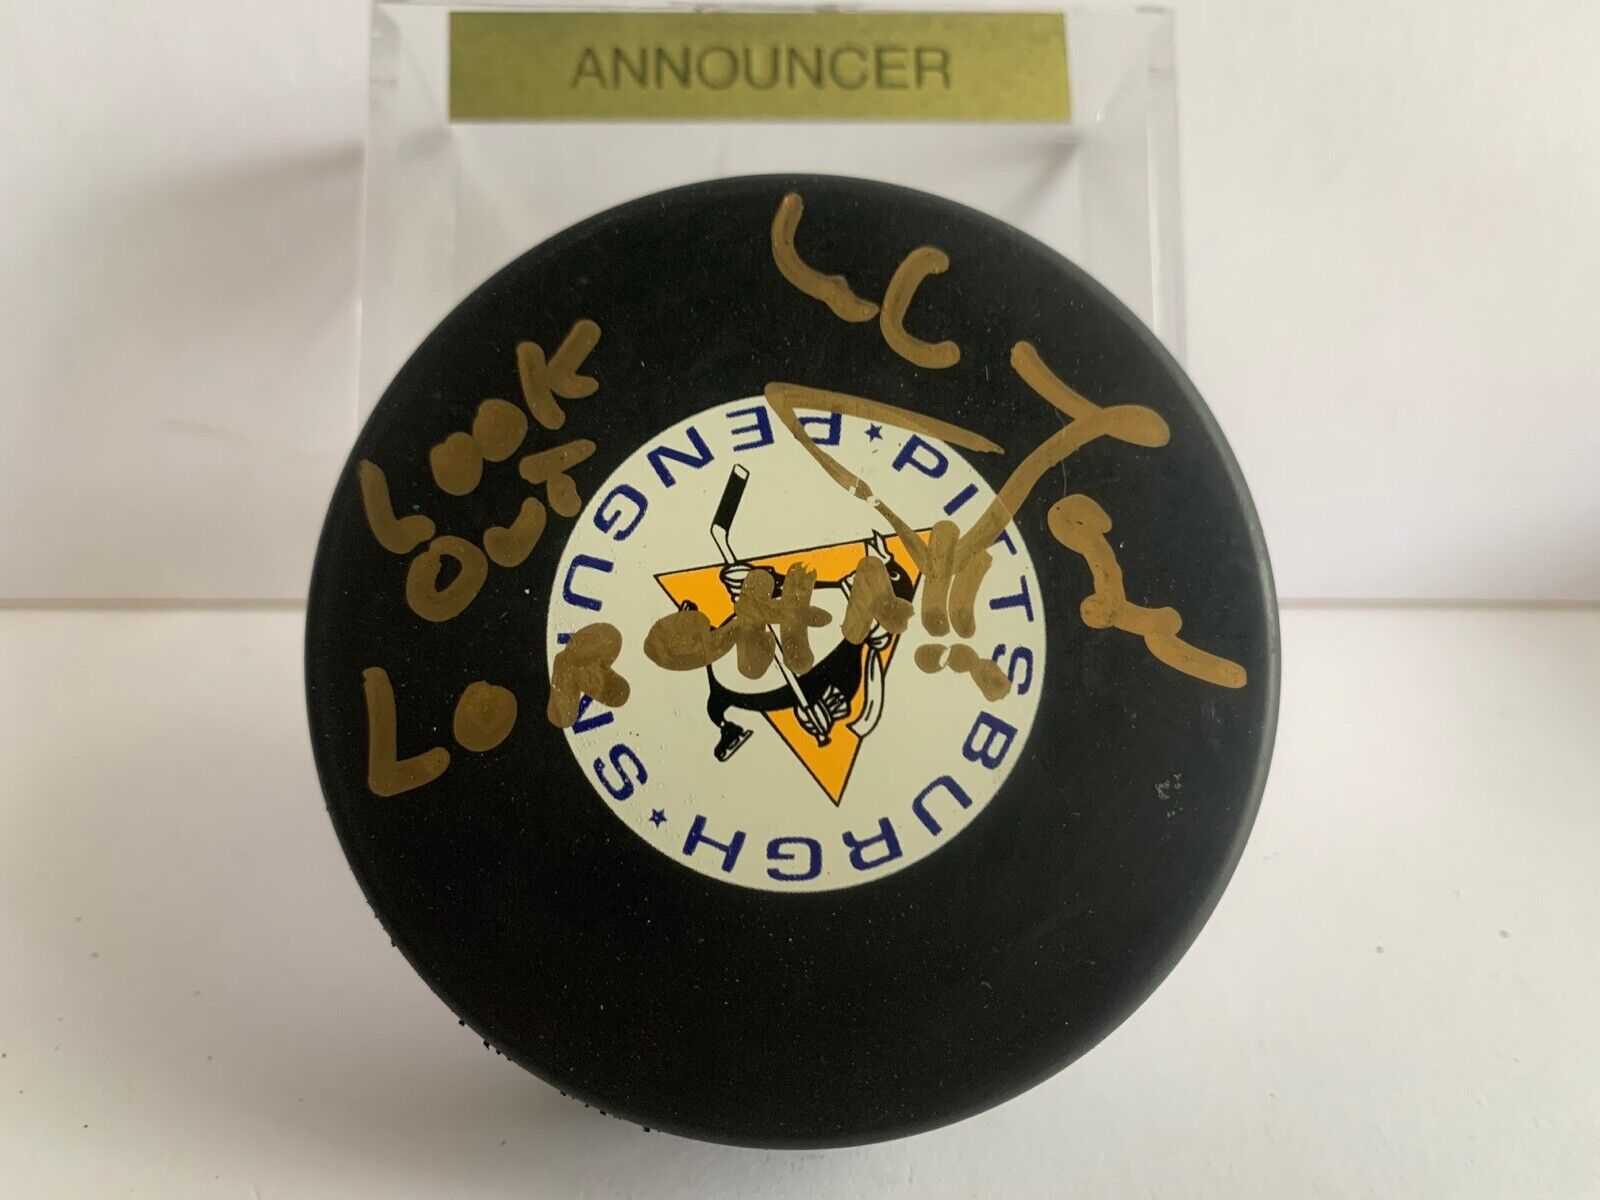 Mike Lange Penguins Announcer Autographed NHL Puck Lookout Loretta Inscription